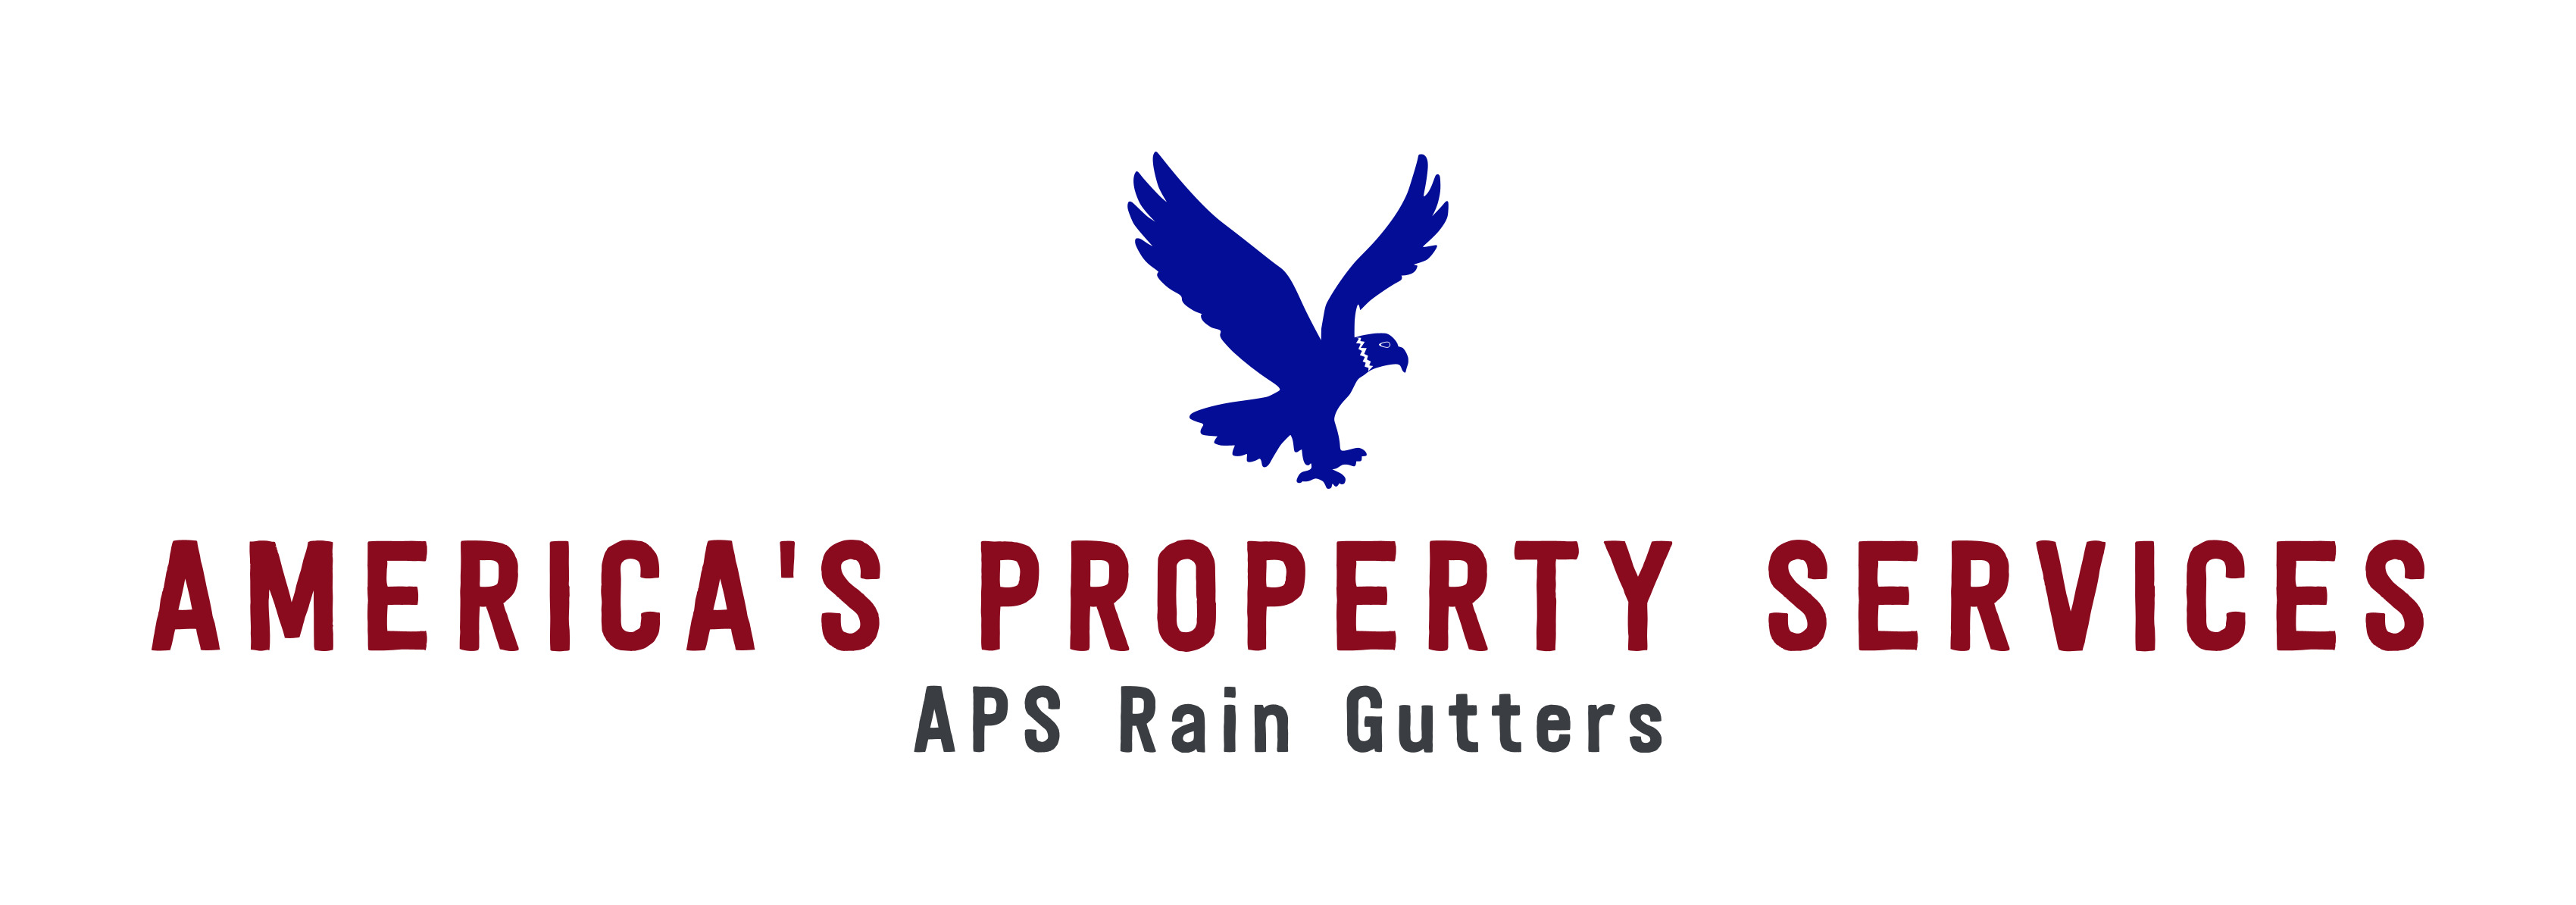 APS RAIN GUTTERS Logo